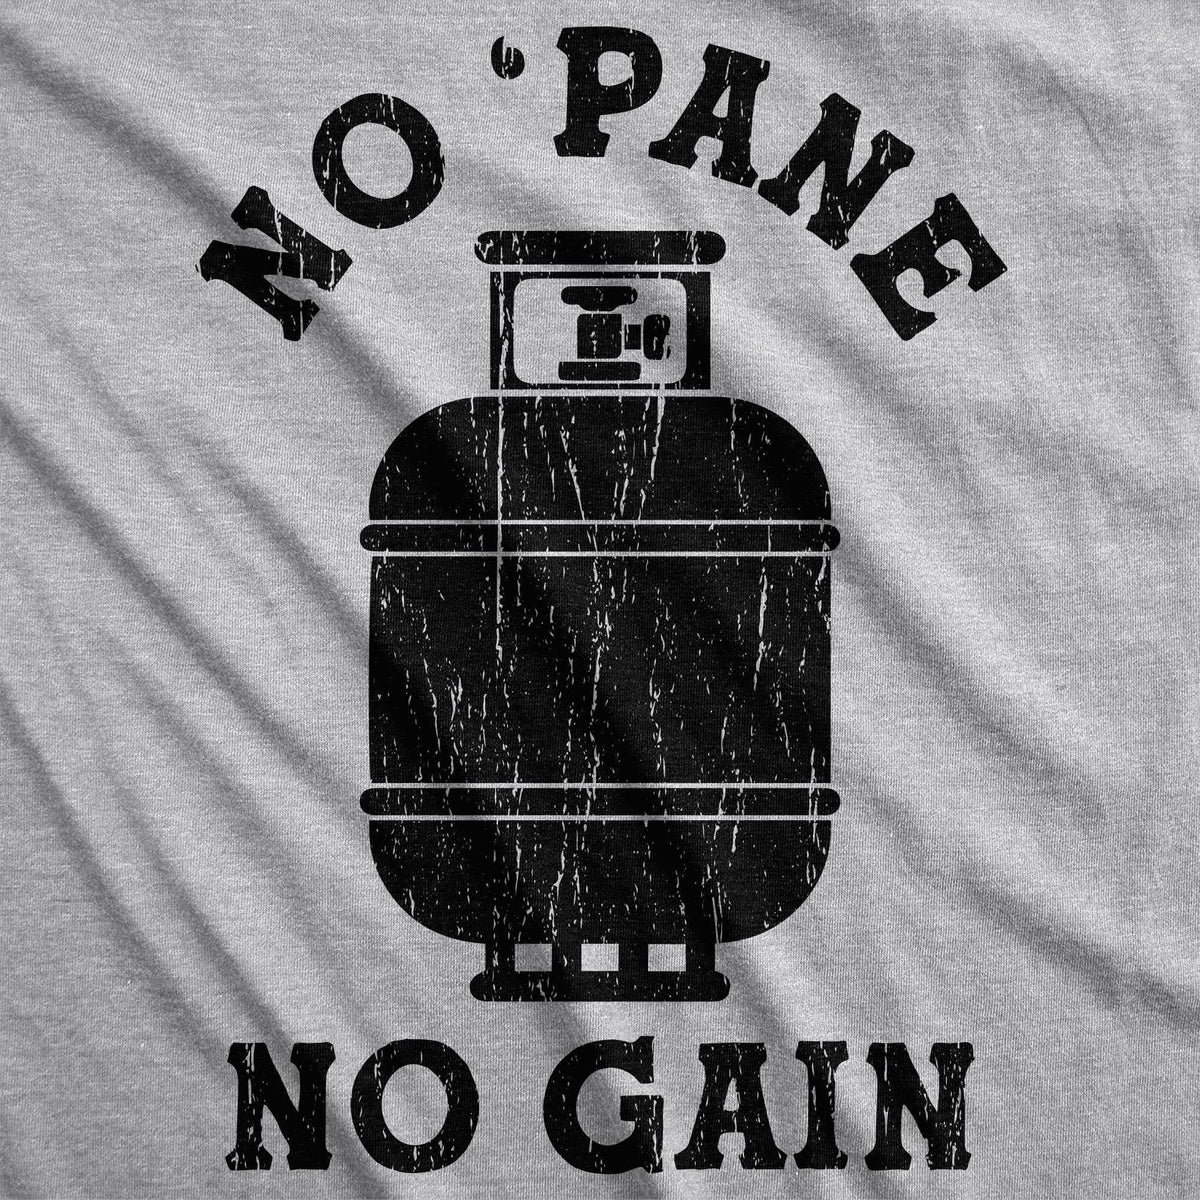 No &#39;Pane No Gain Men&#39;s Tshirt - Crazy Dog T-Shirts